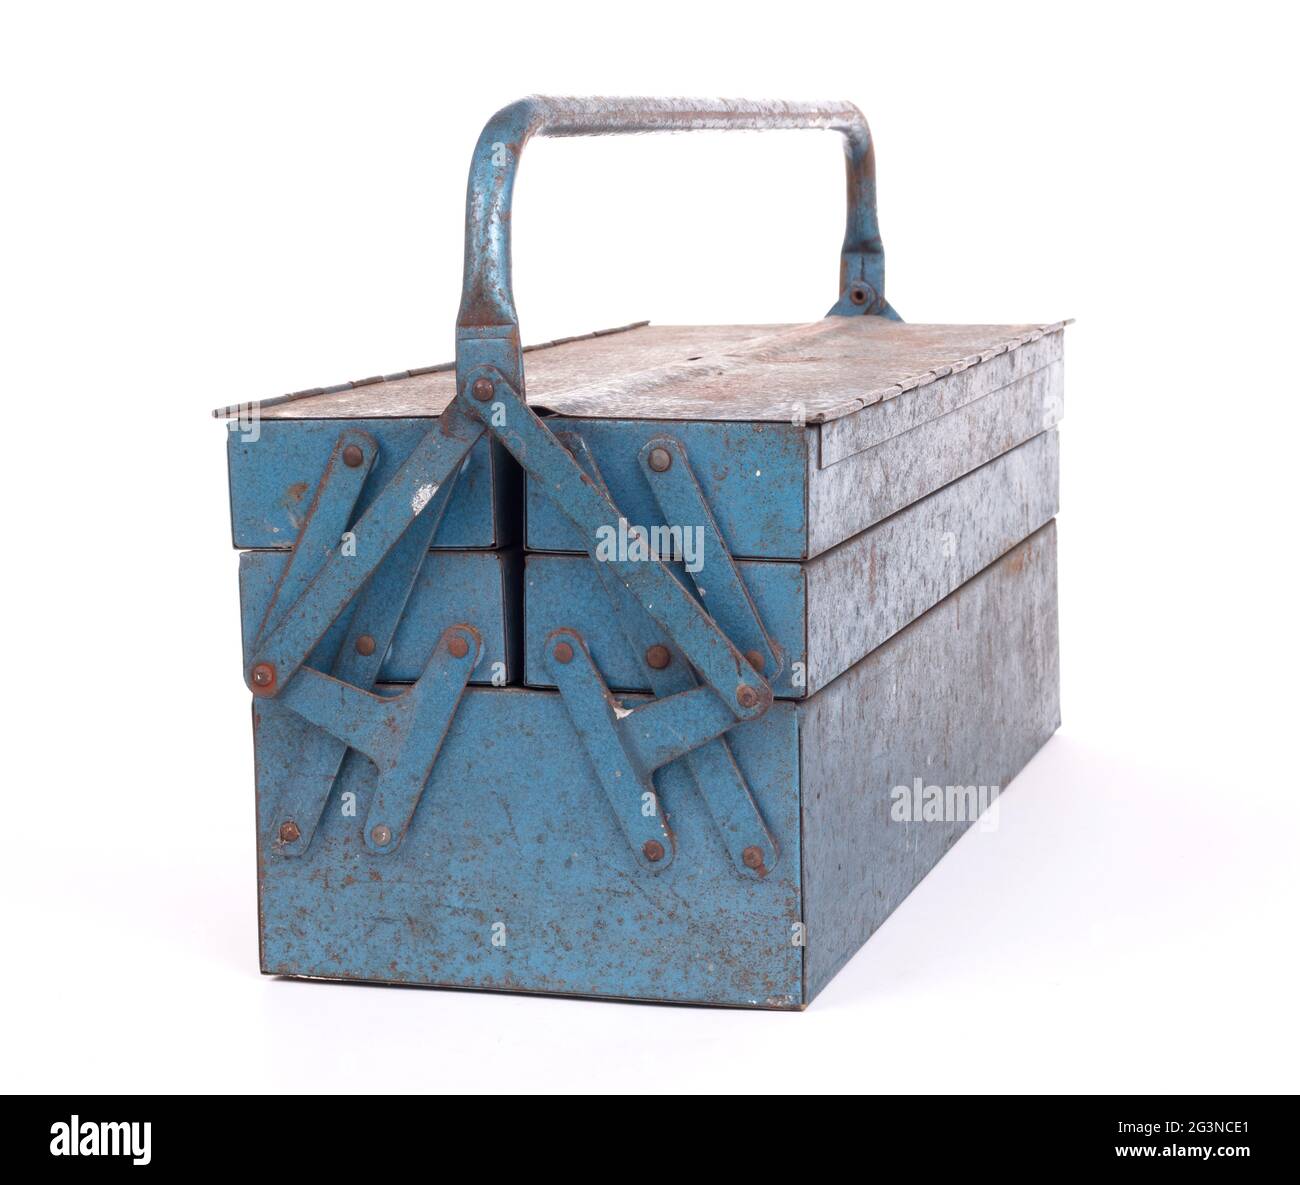 Antigua caja de herramientas metálica Fotografía de stock - Alamy